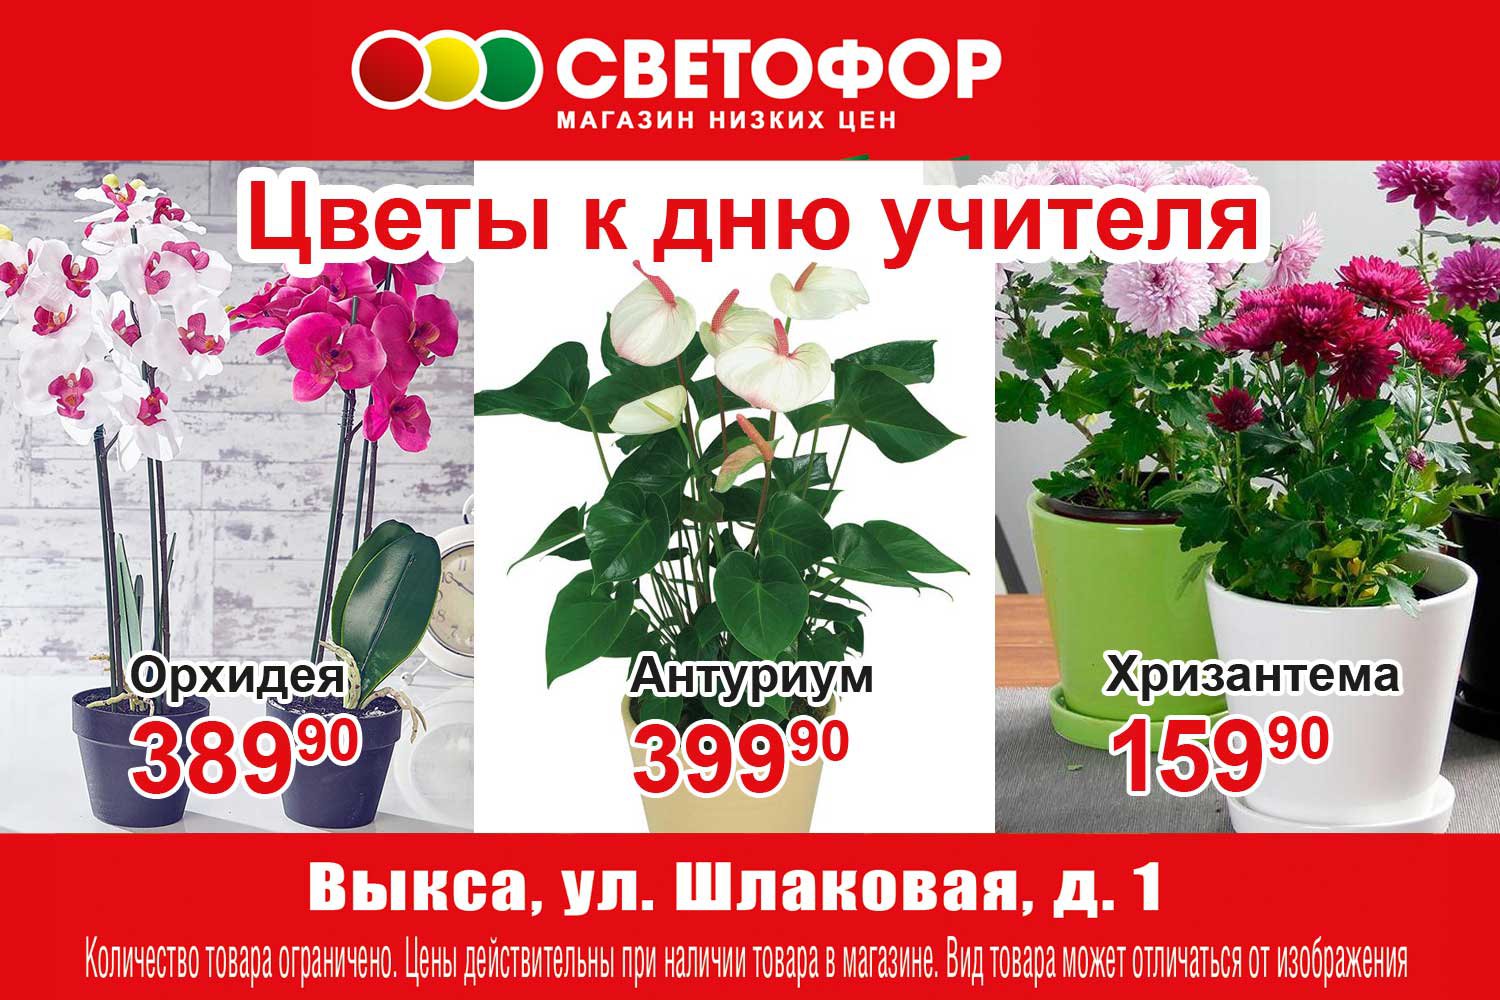 Цветы ко Дню учителя — в супермаркете «Светофор»